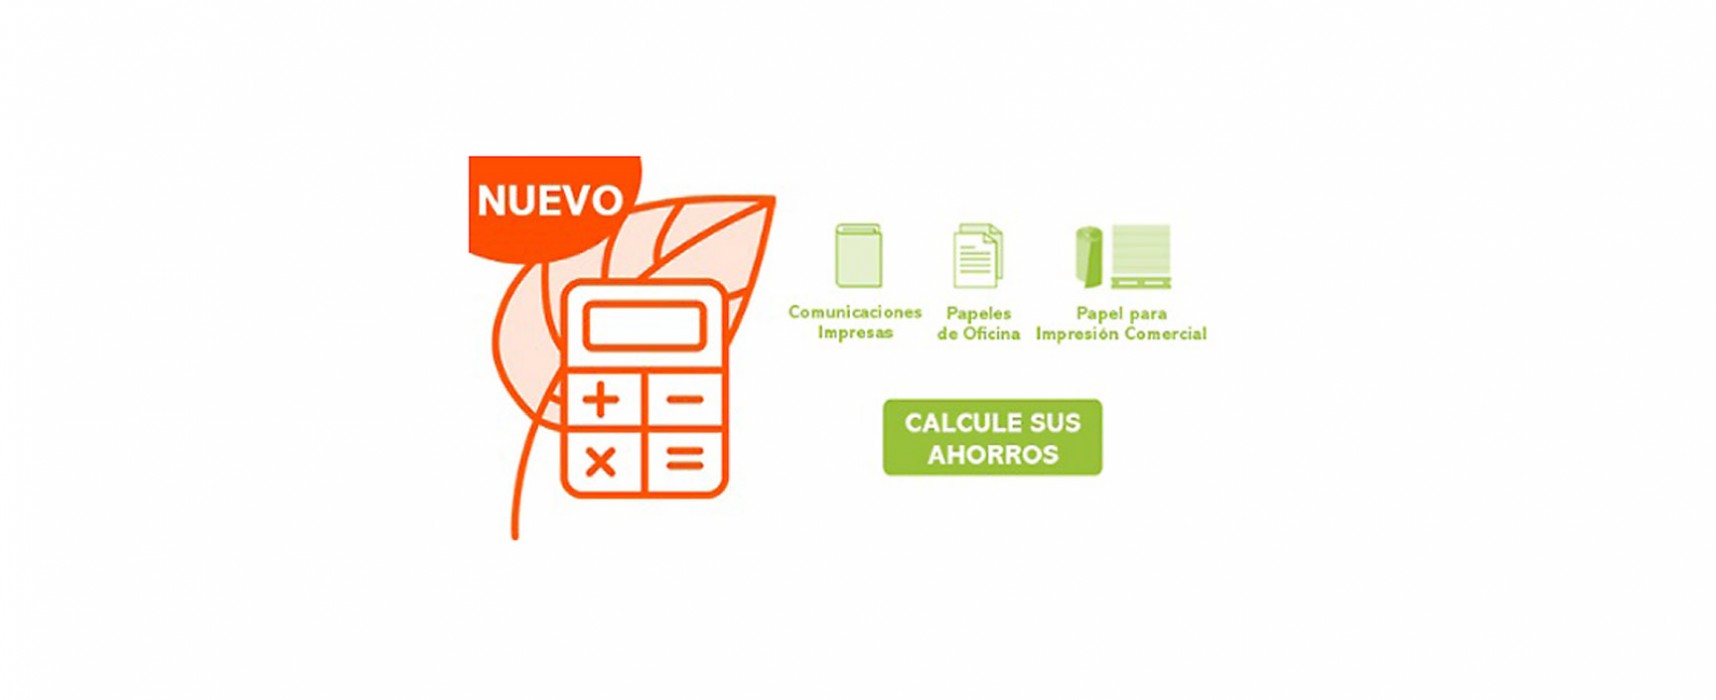 Una calculadora eco para saber el ahorro medioambiental